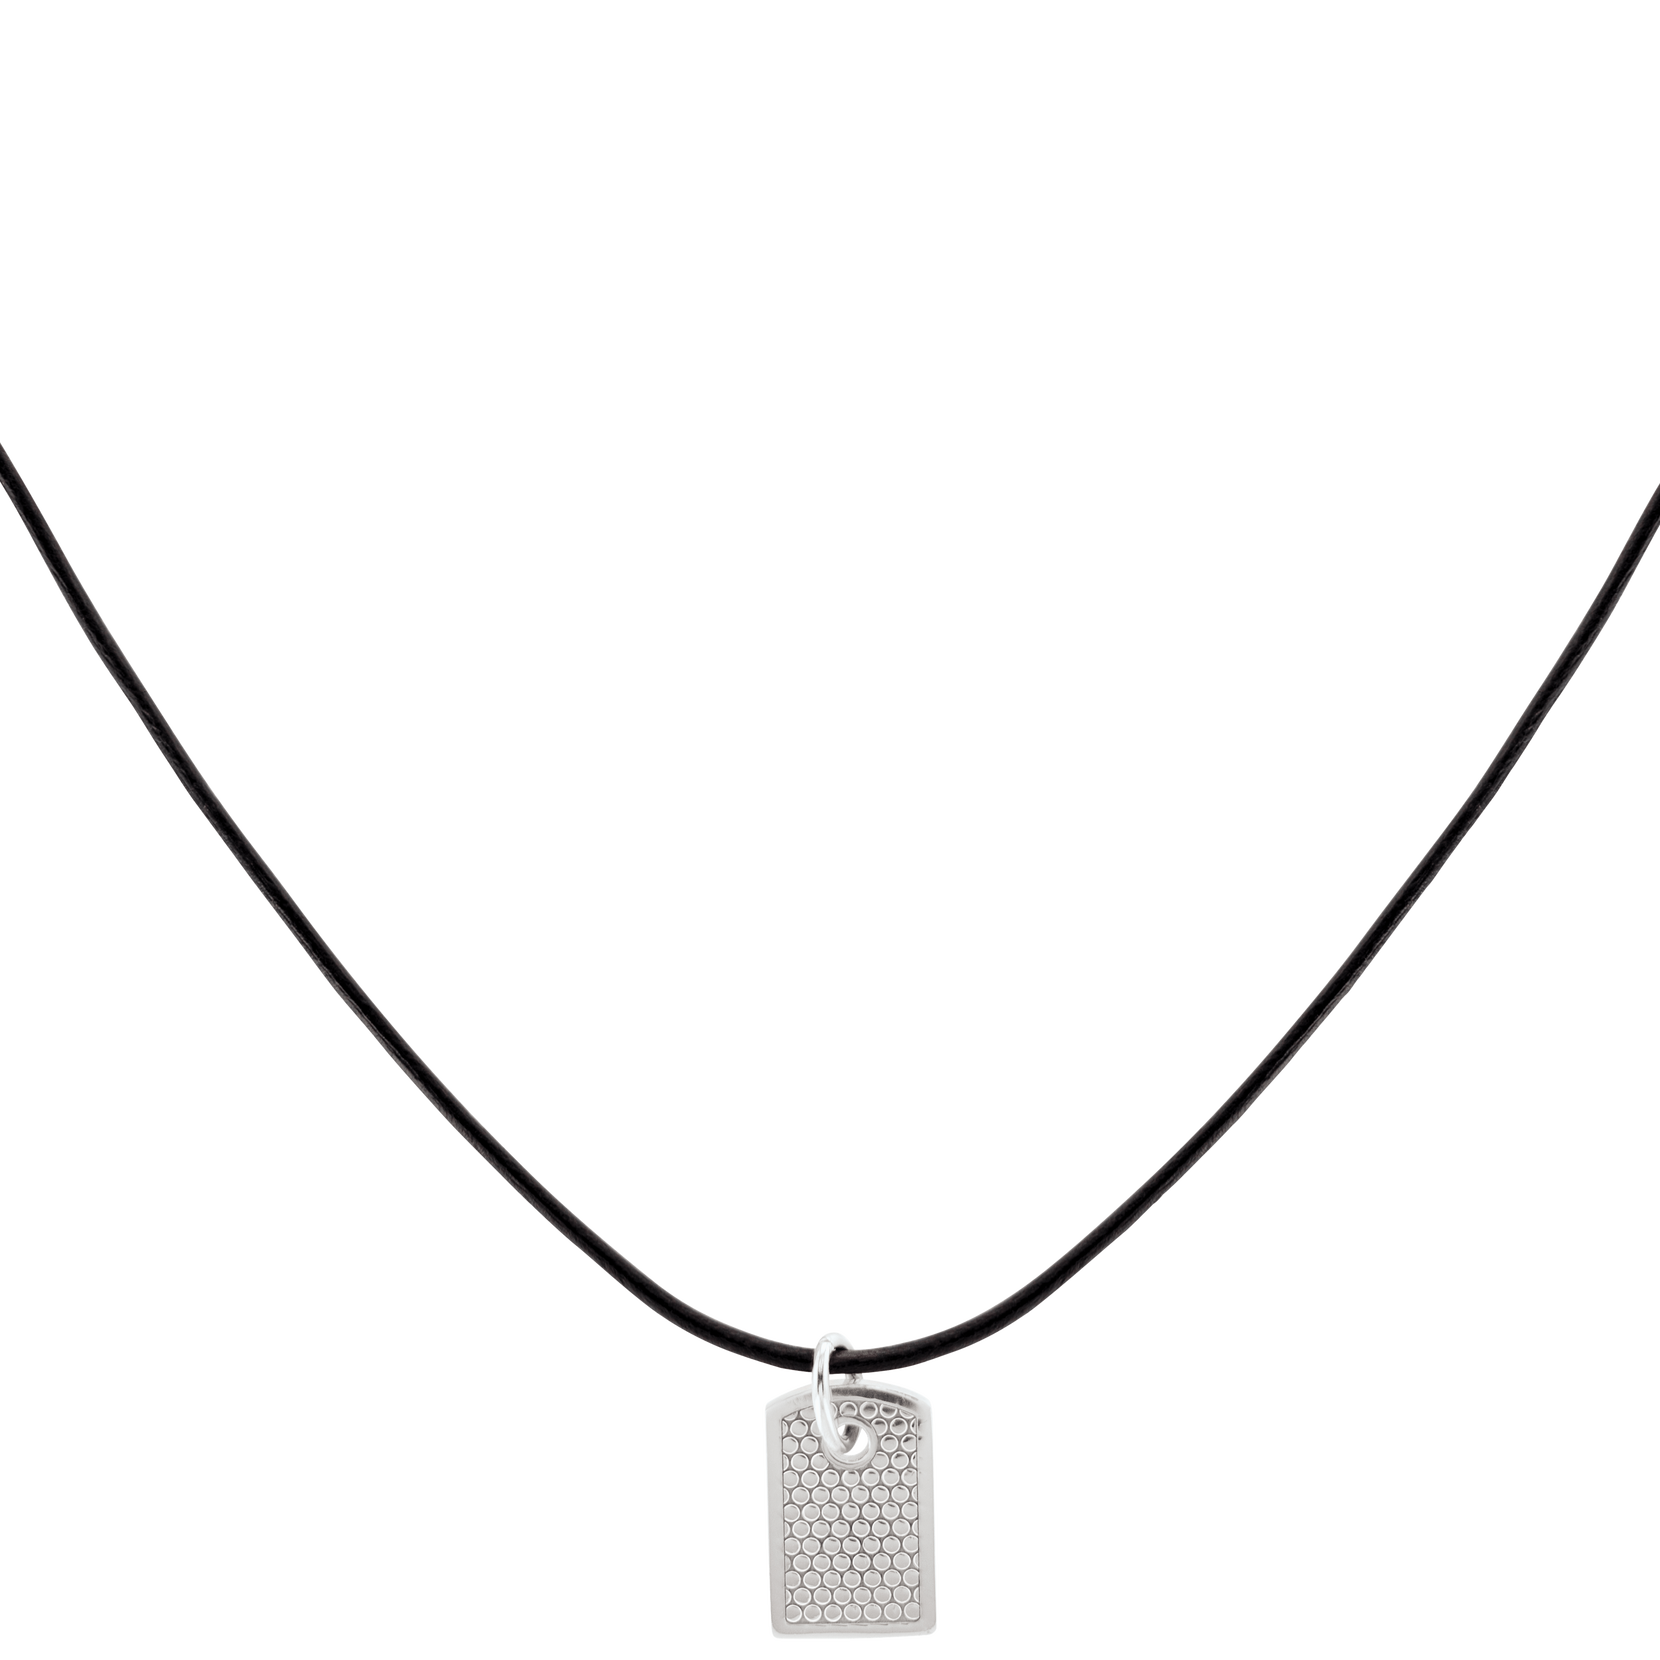 Movado  Movado Men's Black Cord Necklace with Silver Pendant